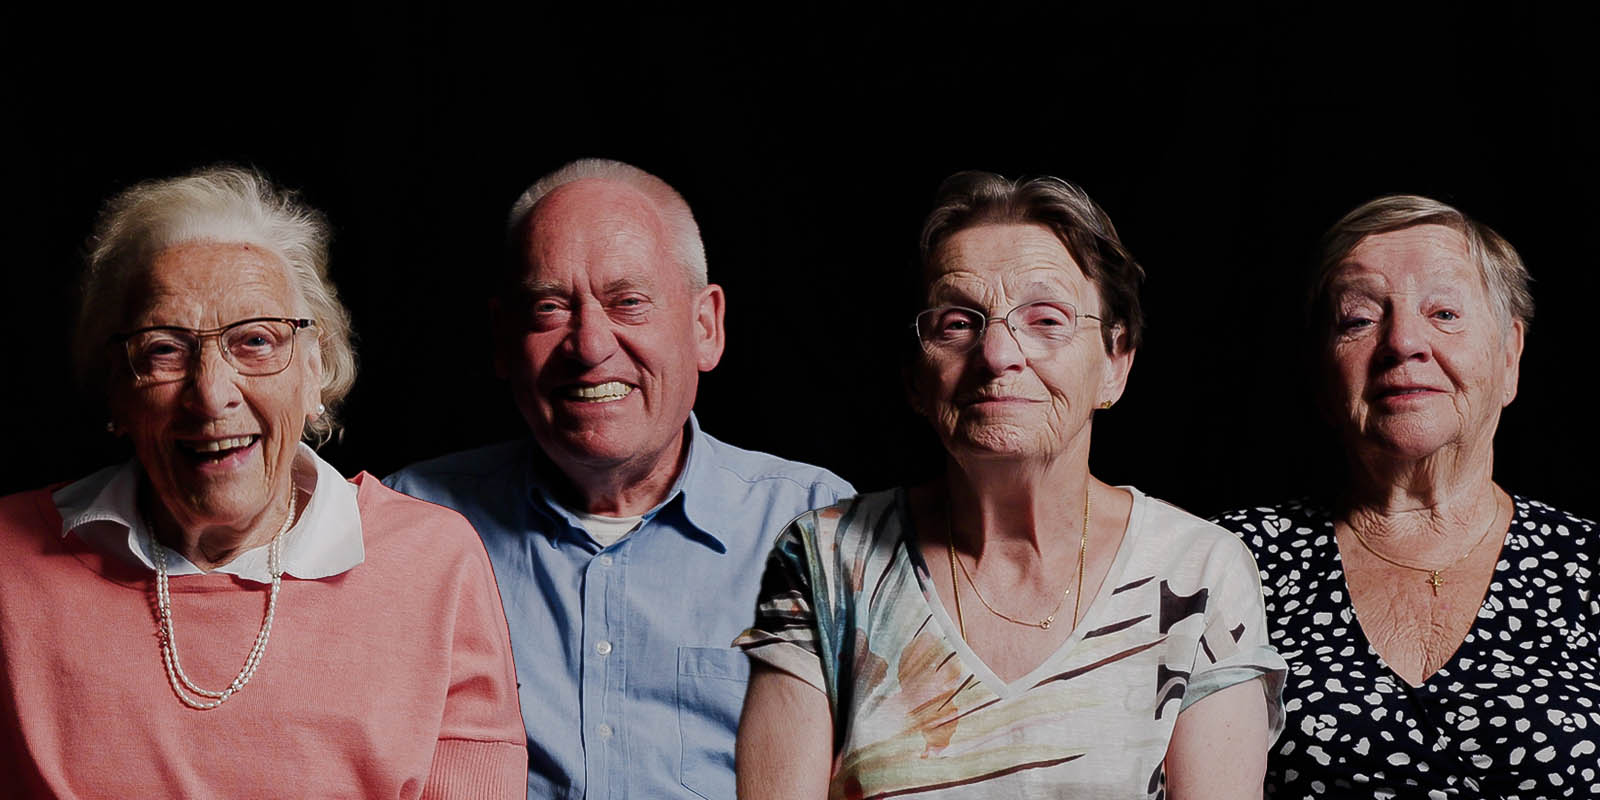 Vier bewoners op rij, voor een zwarte achtergrond. Ze lachen allemaal in de camera. Beeld uit de campagne: werken in de dementiezorg: weet waar je het voor doet.